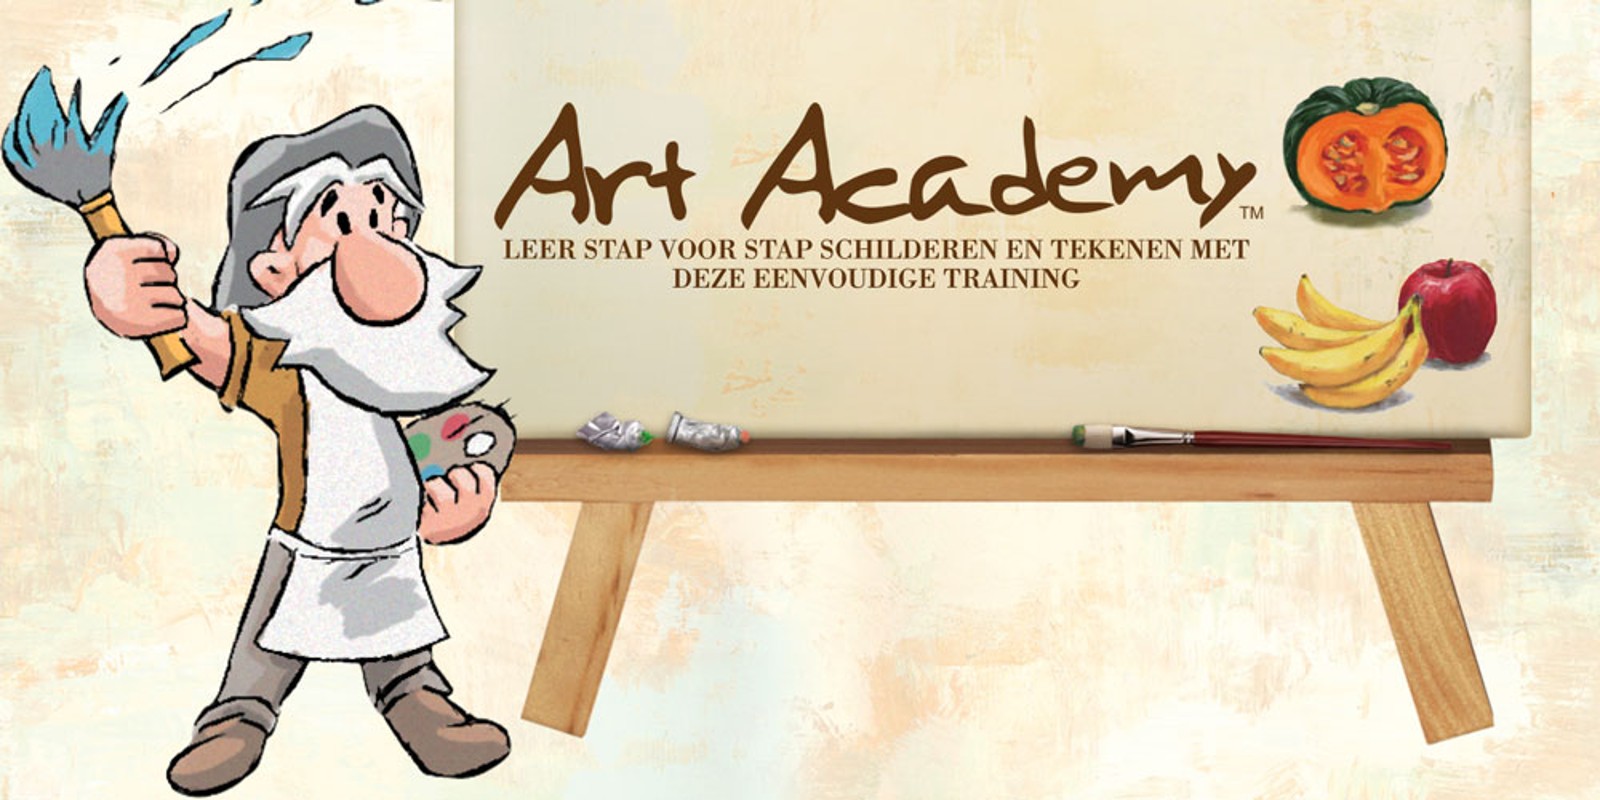 Art Academy: Leer stap voor stap schilderen en tekenen